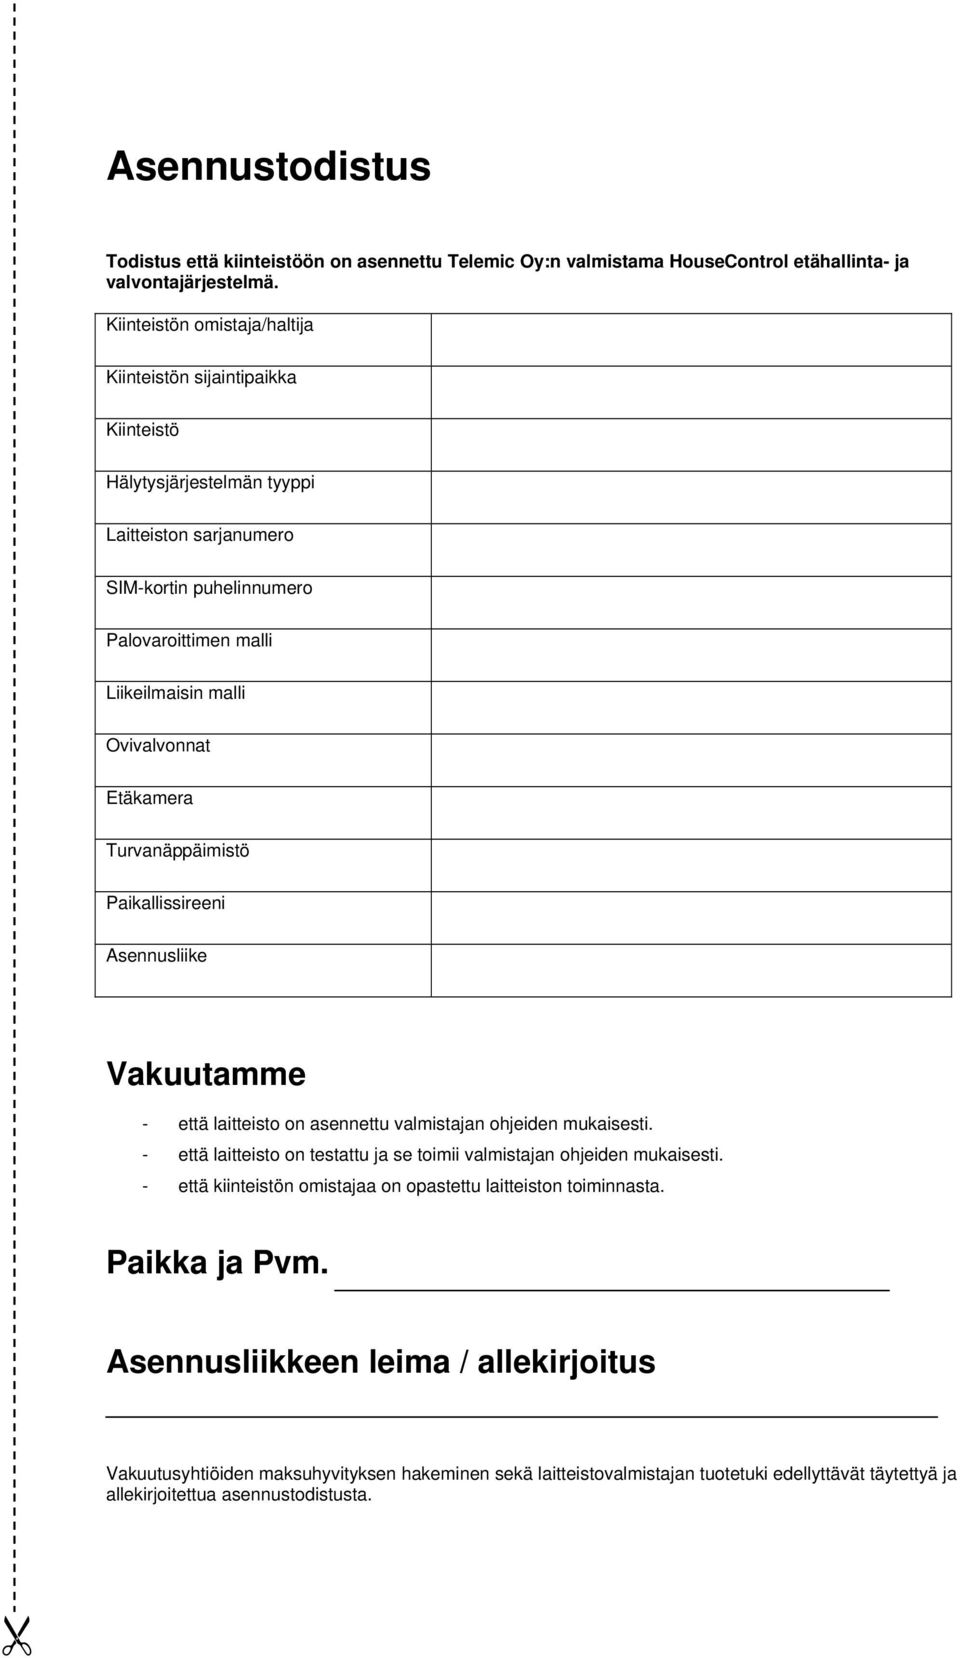 Etäkamera Turvanäppäimistö Paikallissireeni Asennusliike Vakuutamme - että laitteisto on asennettu valmistajan ohjeiden mukaisesti.